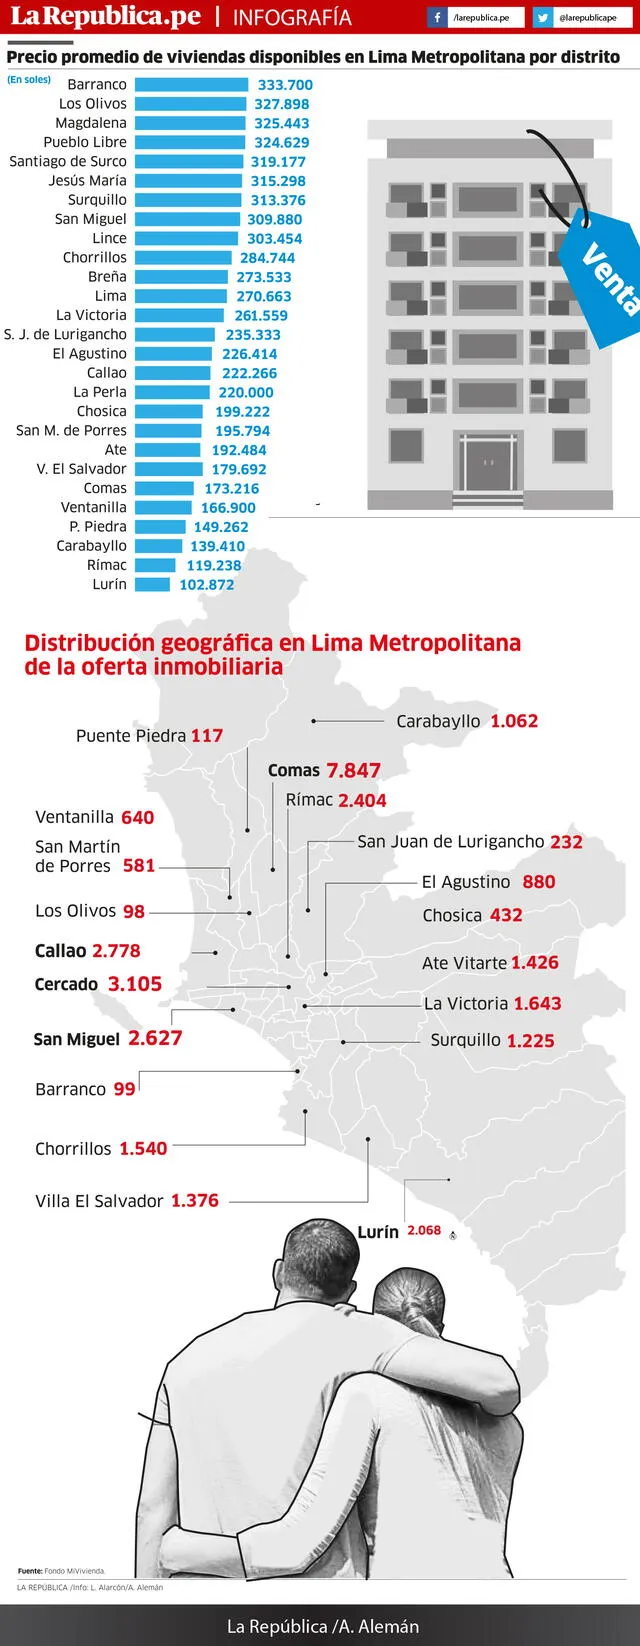 Costo de viviendas en Lima